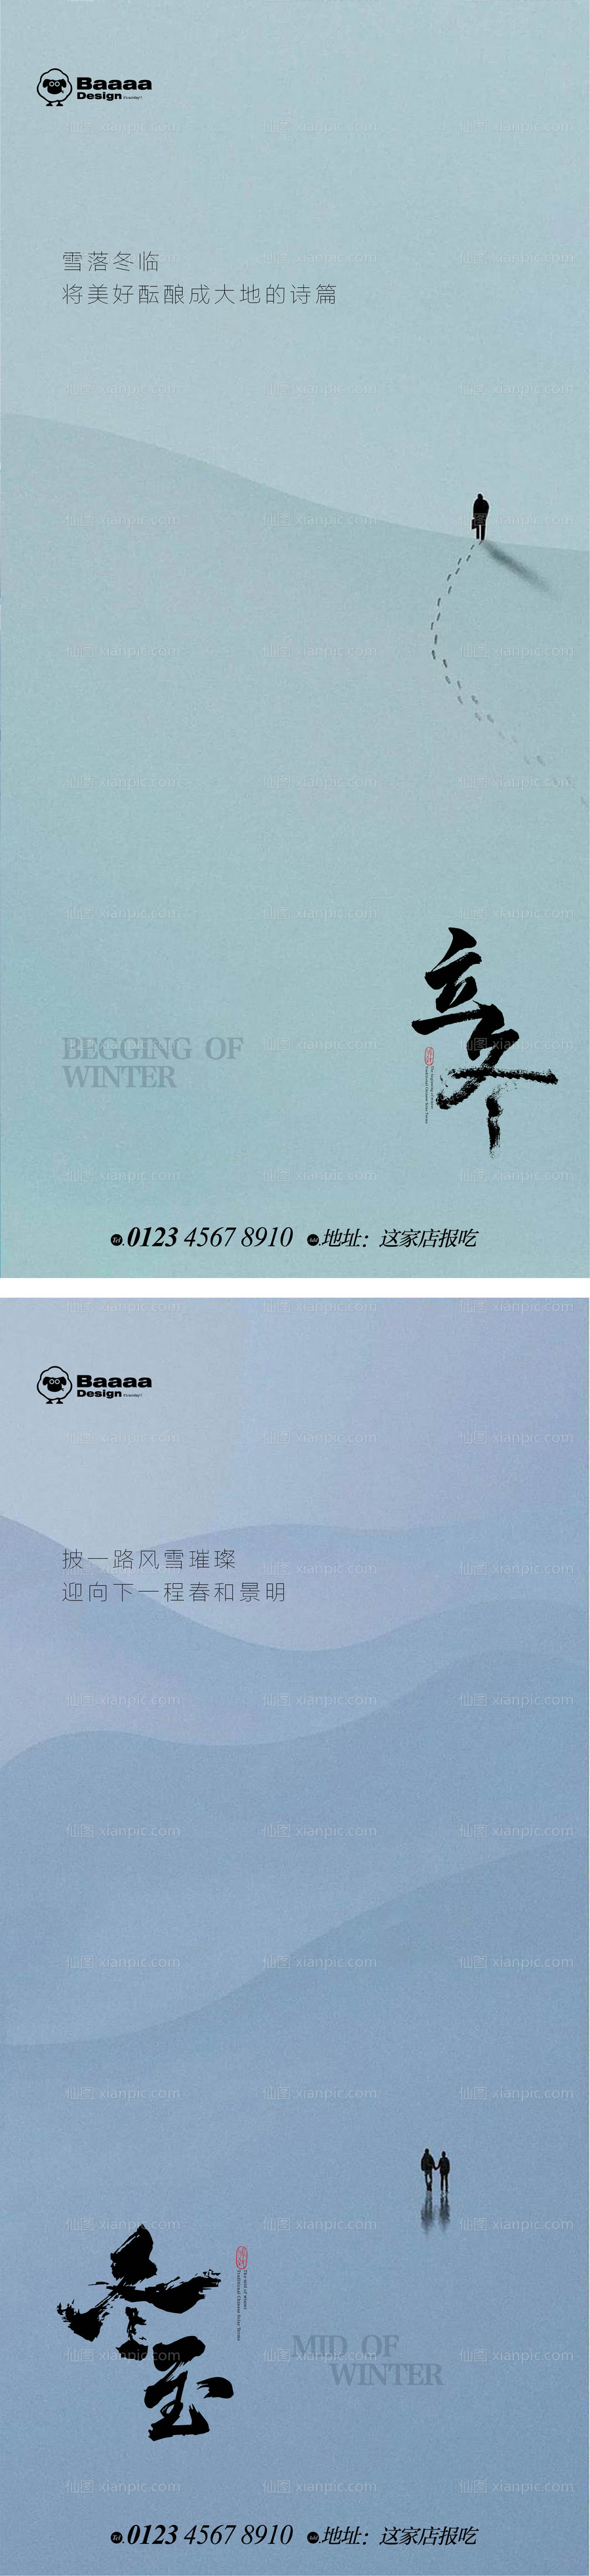 素材乐-立冬冬至意境节气海报